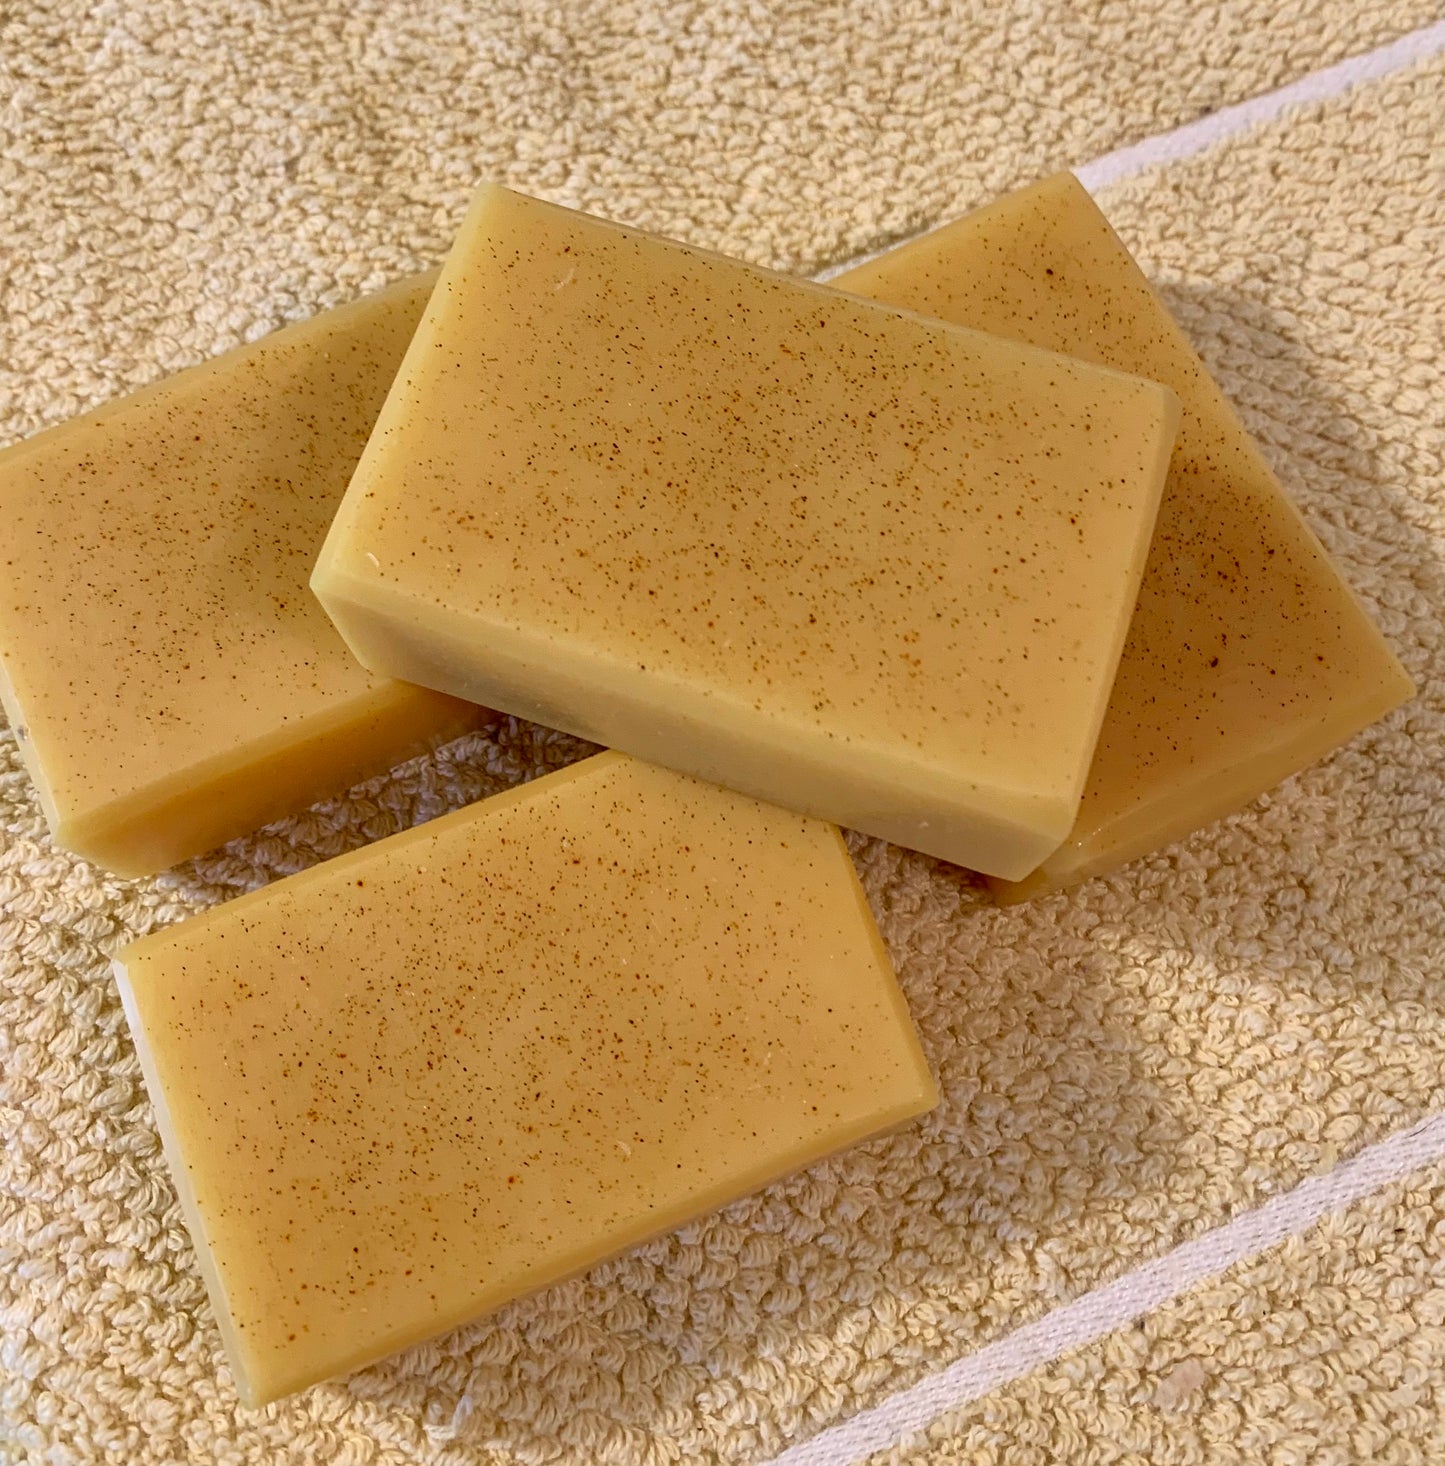 Honey, Turmeric & Cinnamon Soap